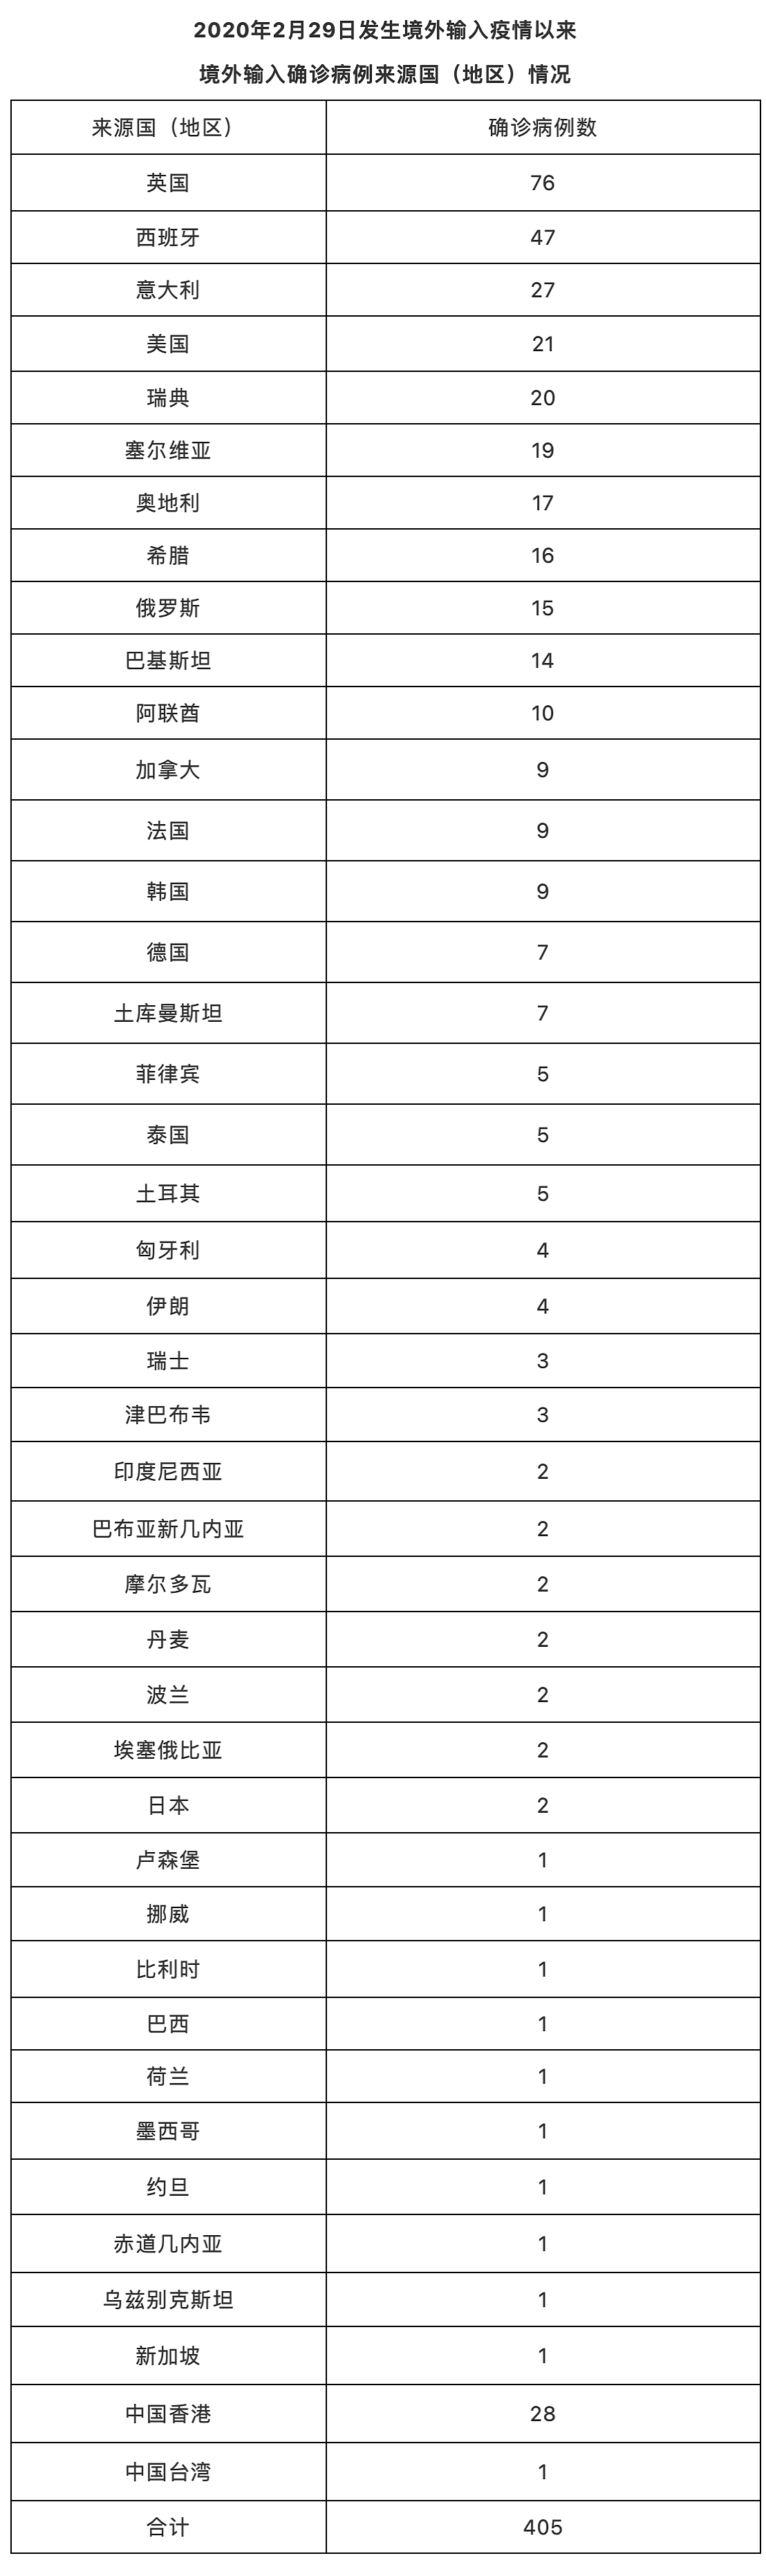 搜狐医药 | 北京22日新增10例本土确诊病例、8例境外输入确诊病例 - 3